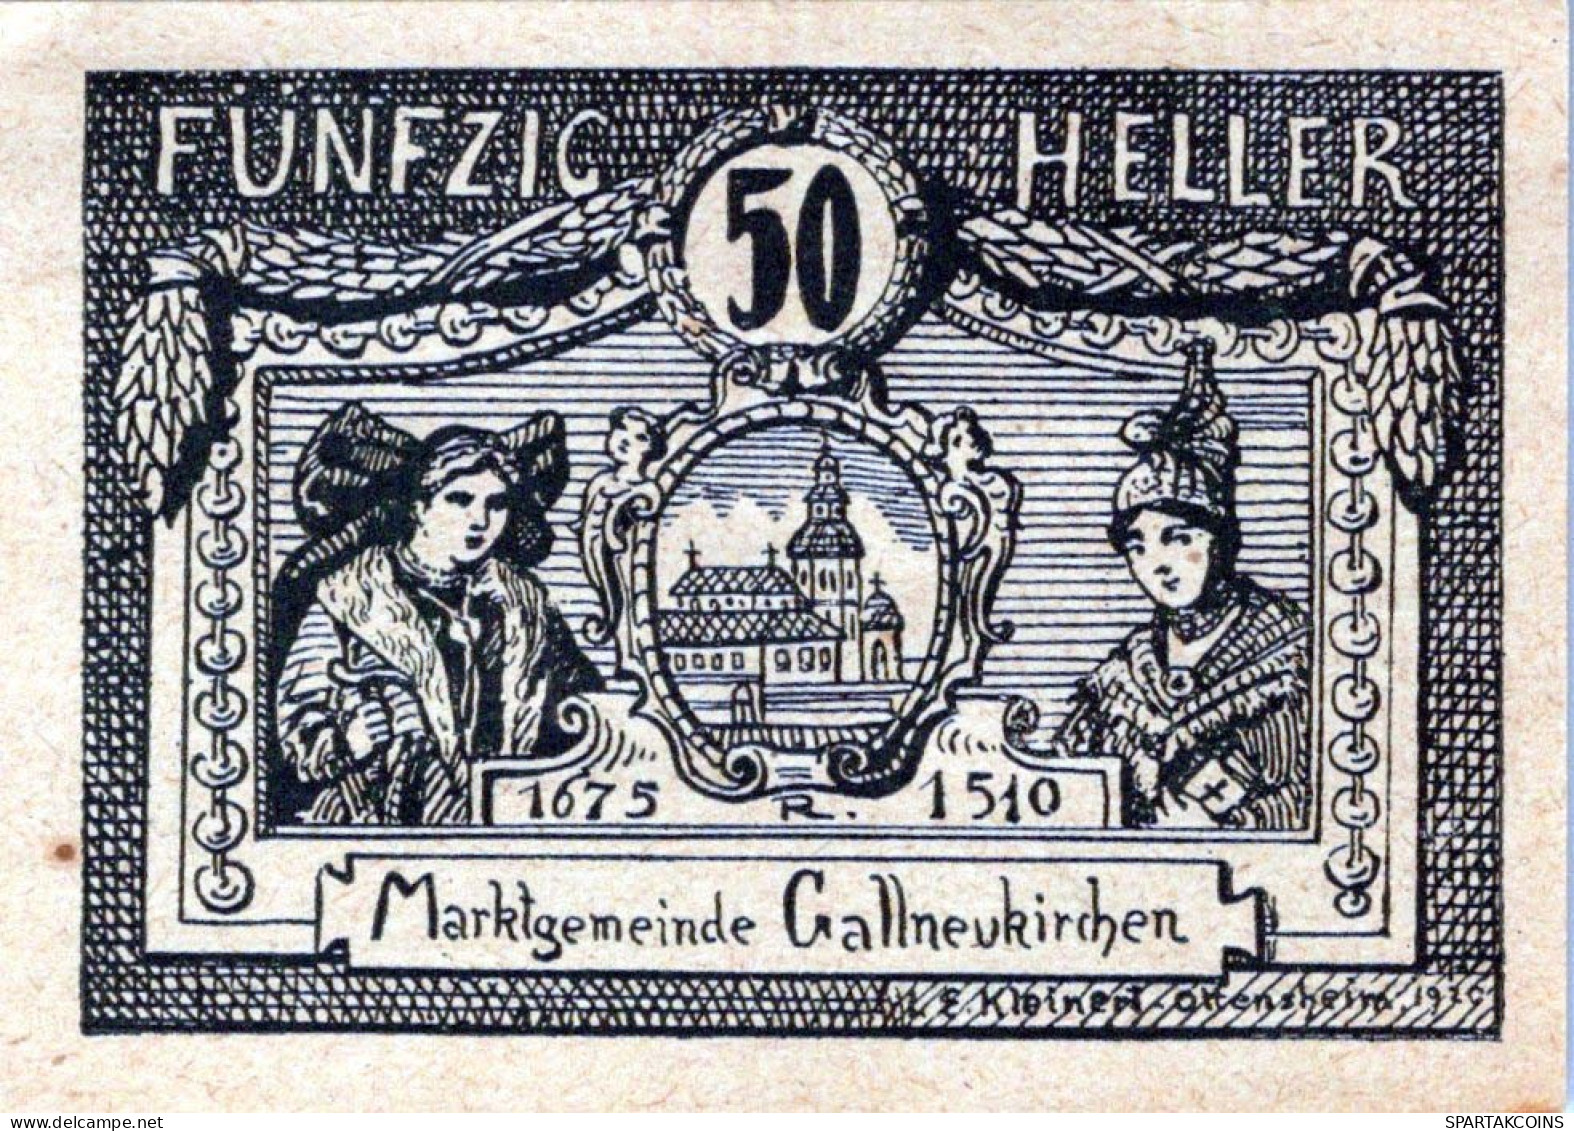 50 HELLER 1920 Stadt GALLNEUKIRCHEN Oberösterreich Österreich Notgeld Papiergeld Banknote #PG556 - [11] Lokale Uitgaven